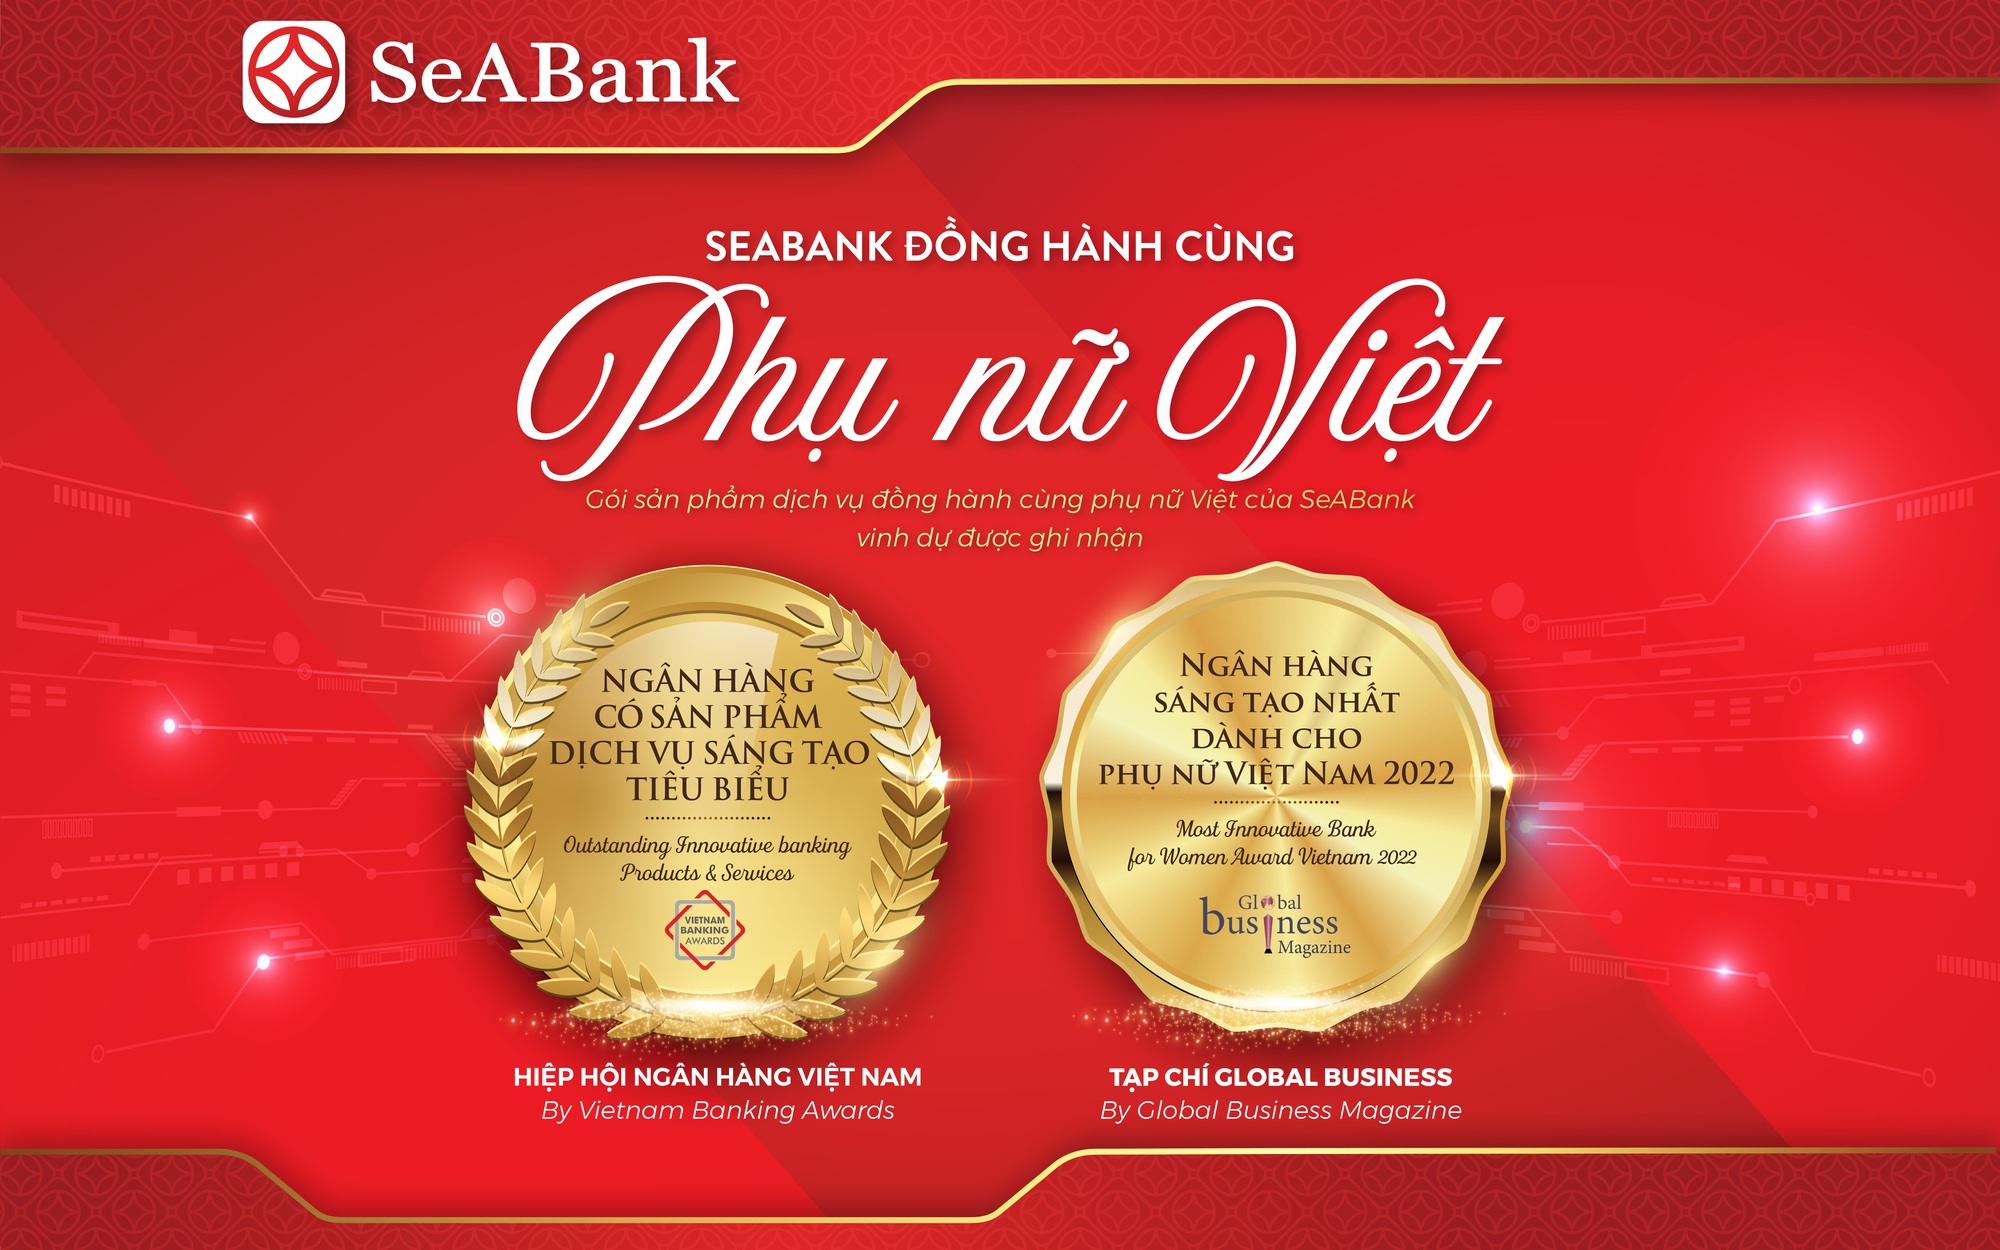 SeABank nhận giải thưởng Ngân hàng sáng tạo nhất dành cho phụ nữ Việt Nam 2022